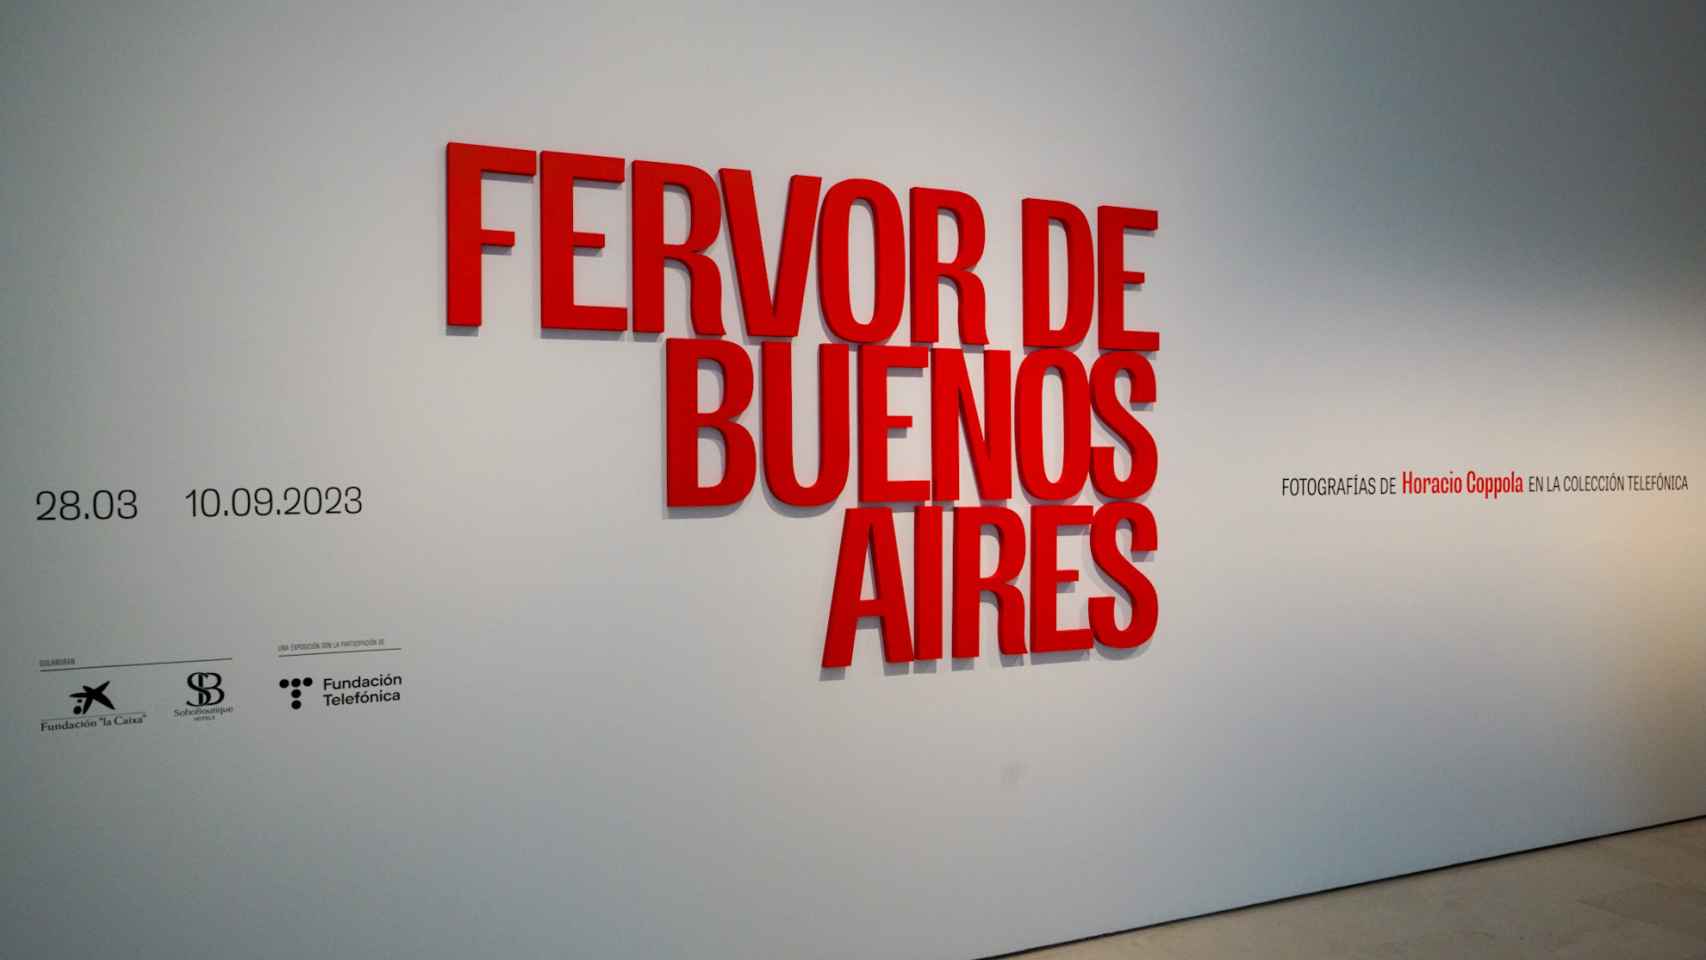 La visión vanguardista de Buenos Aires por los fotógrafos Horacio Coppola y Grete Stern, nueva exposición del Museo Carmen Thyssen Málaga.